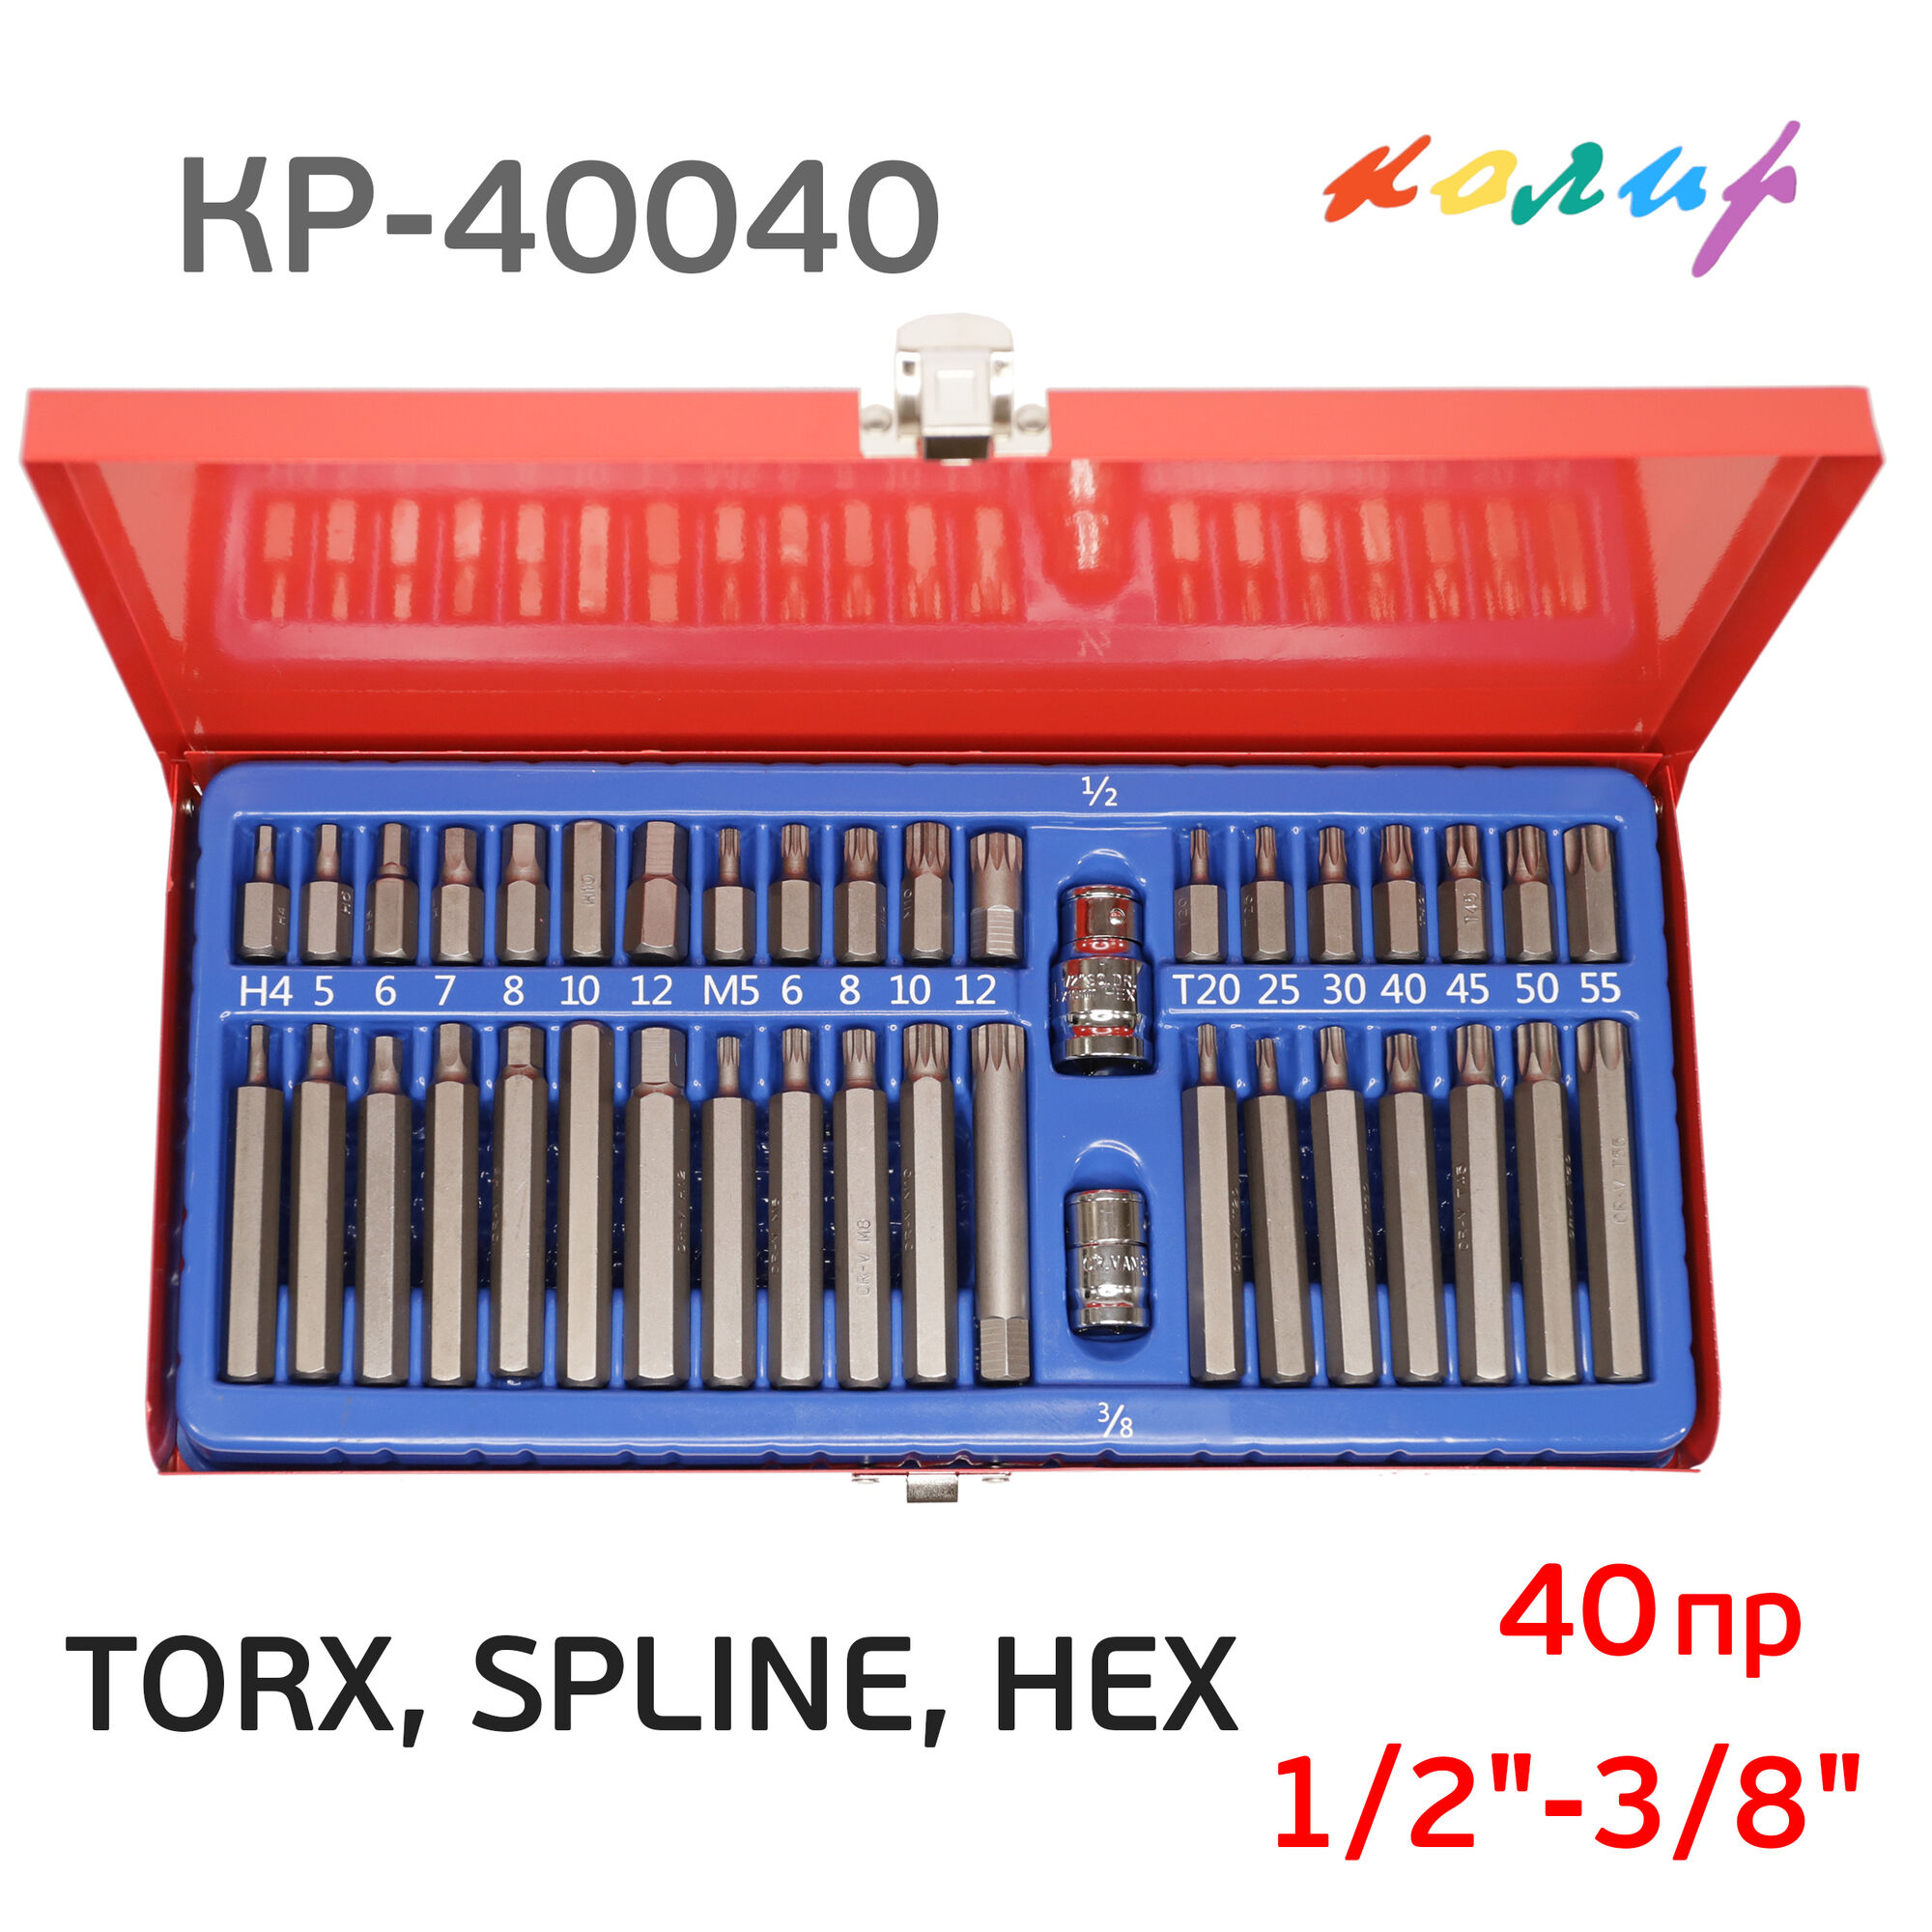 Набор бит 1/2"-3/8" TORX, SPLINE, HEX (40пр.) Колир КР-40040 шестигранники, торсы, сплайны, мет.кейс